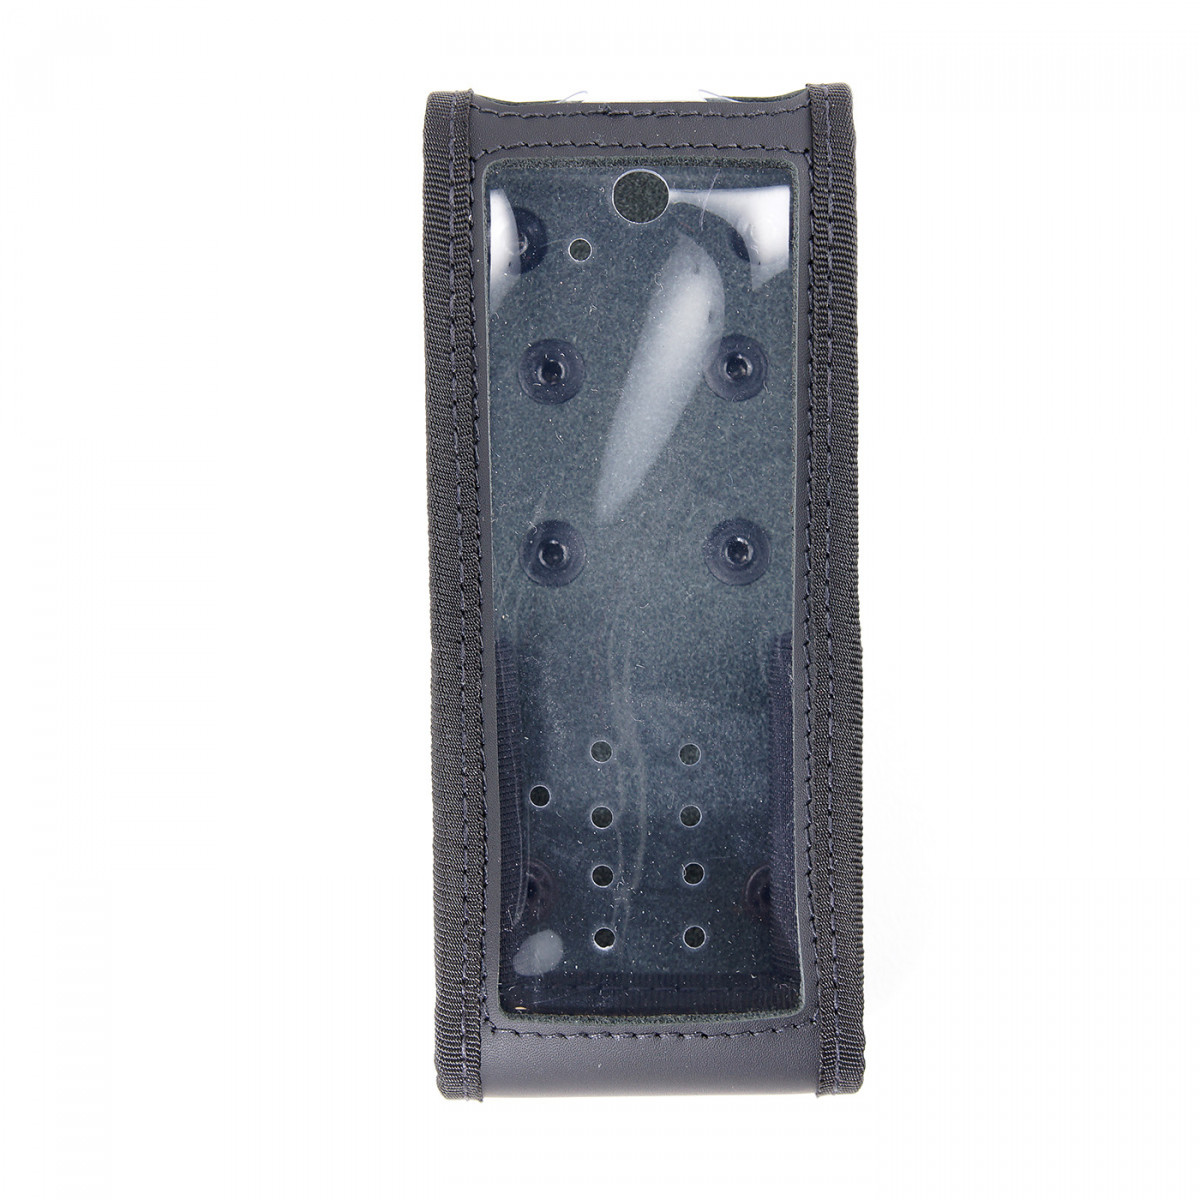 SEPURA Weichledertasche mit kontakt-pro Knopf für Sepura STP8038 STP9038 E16902 M27054